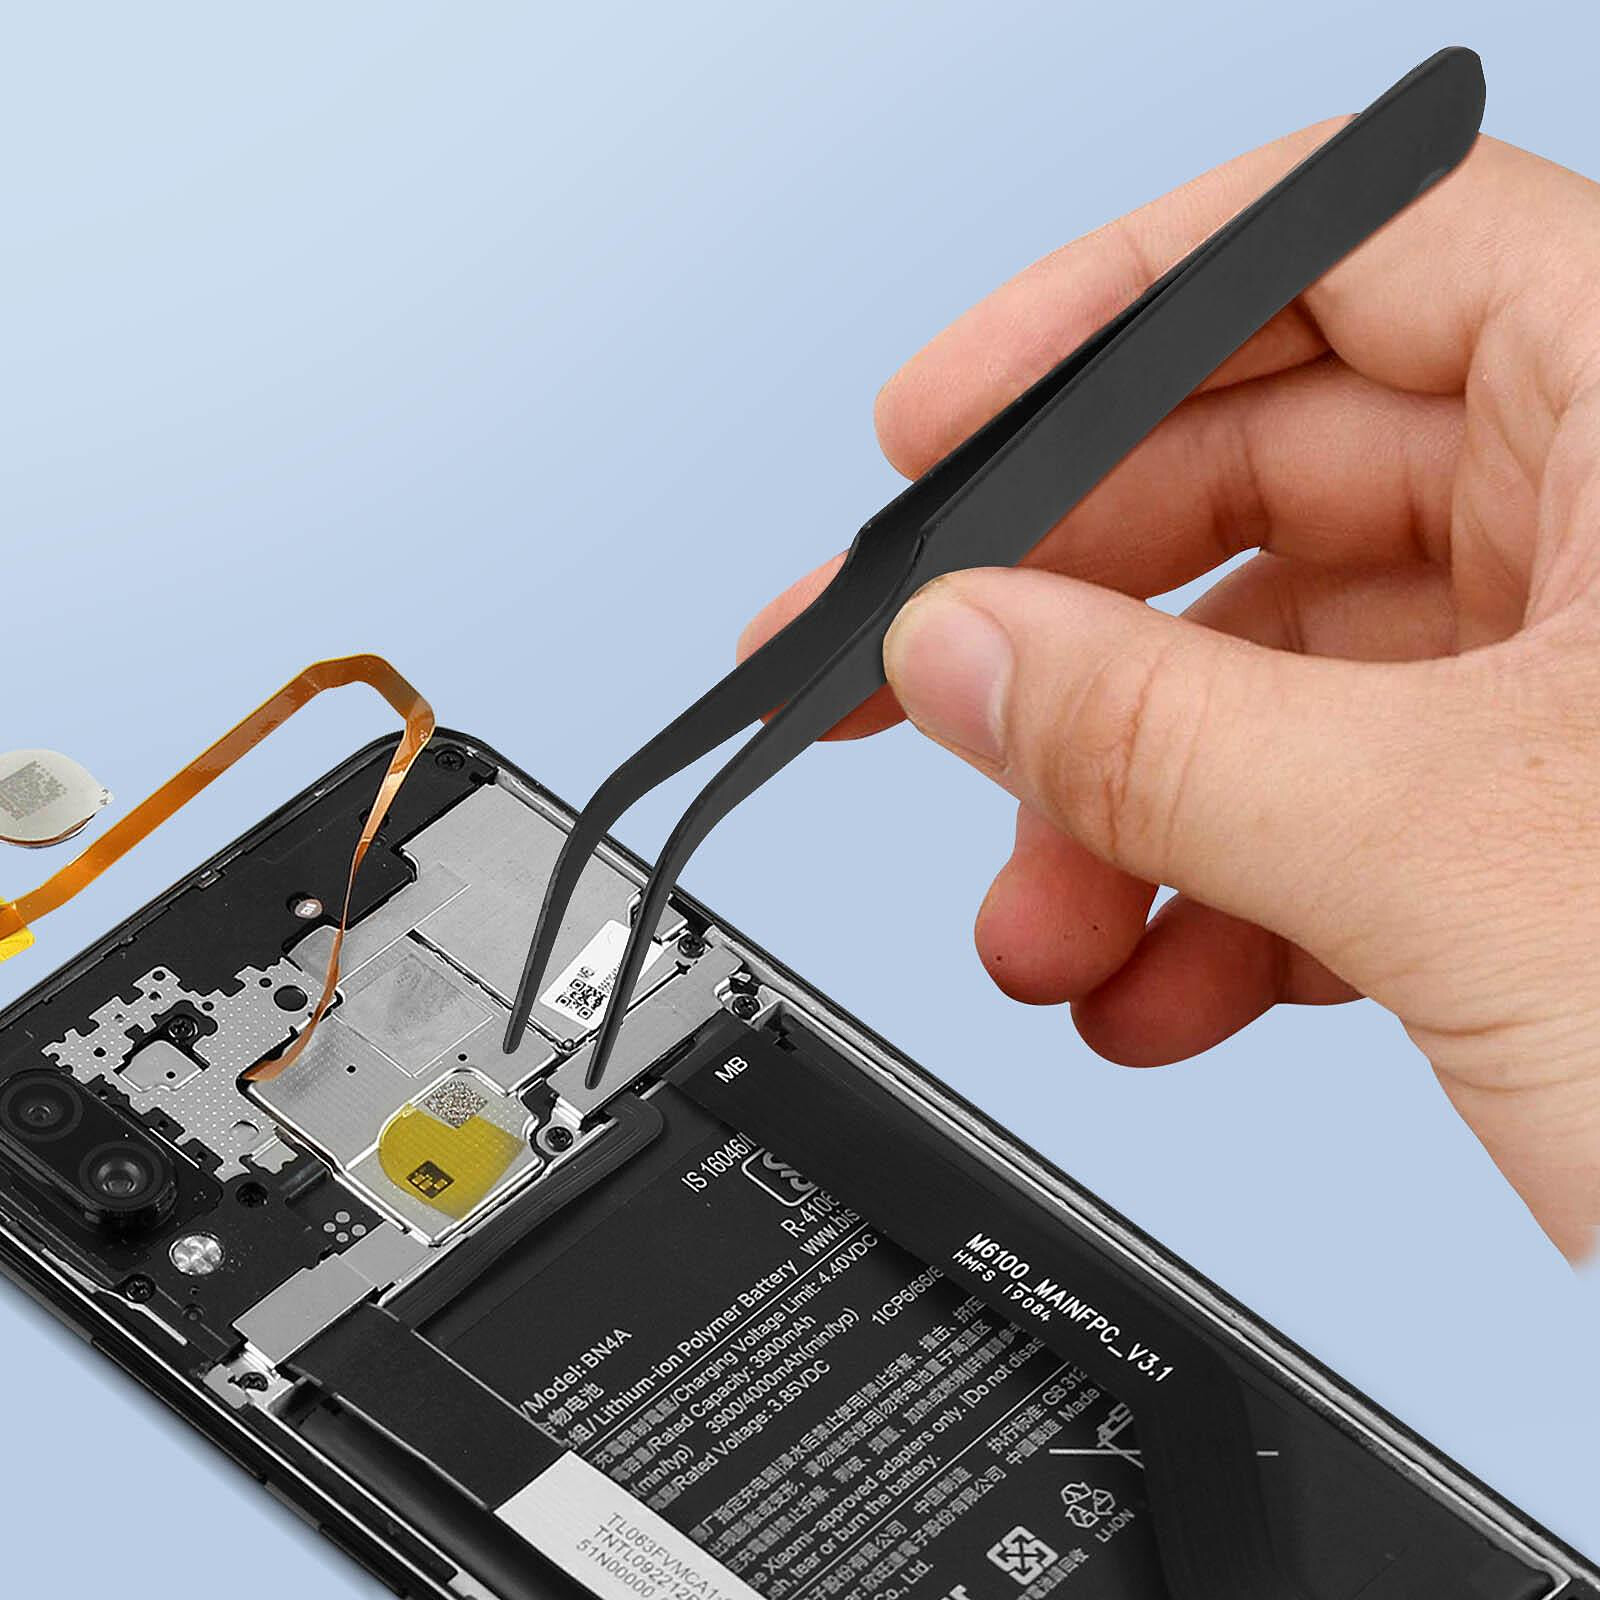 Avizar Kit d'outils Démontage Réparation Smartphone / tablette Set